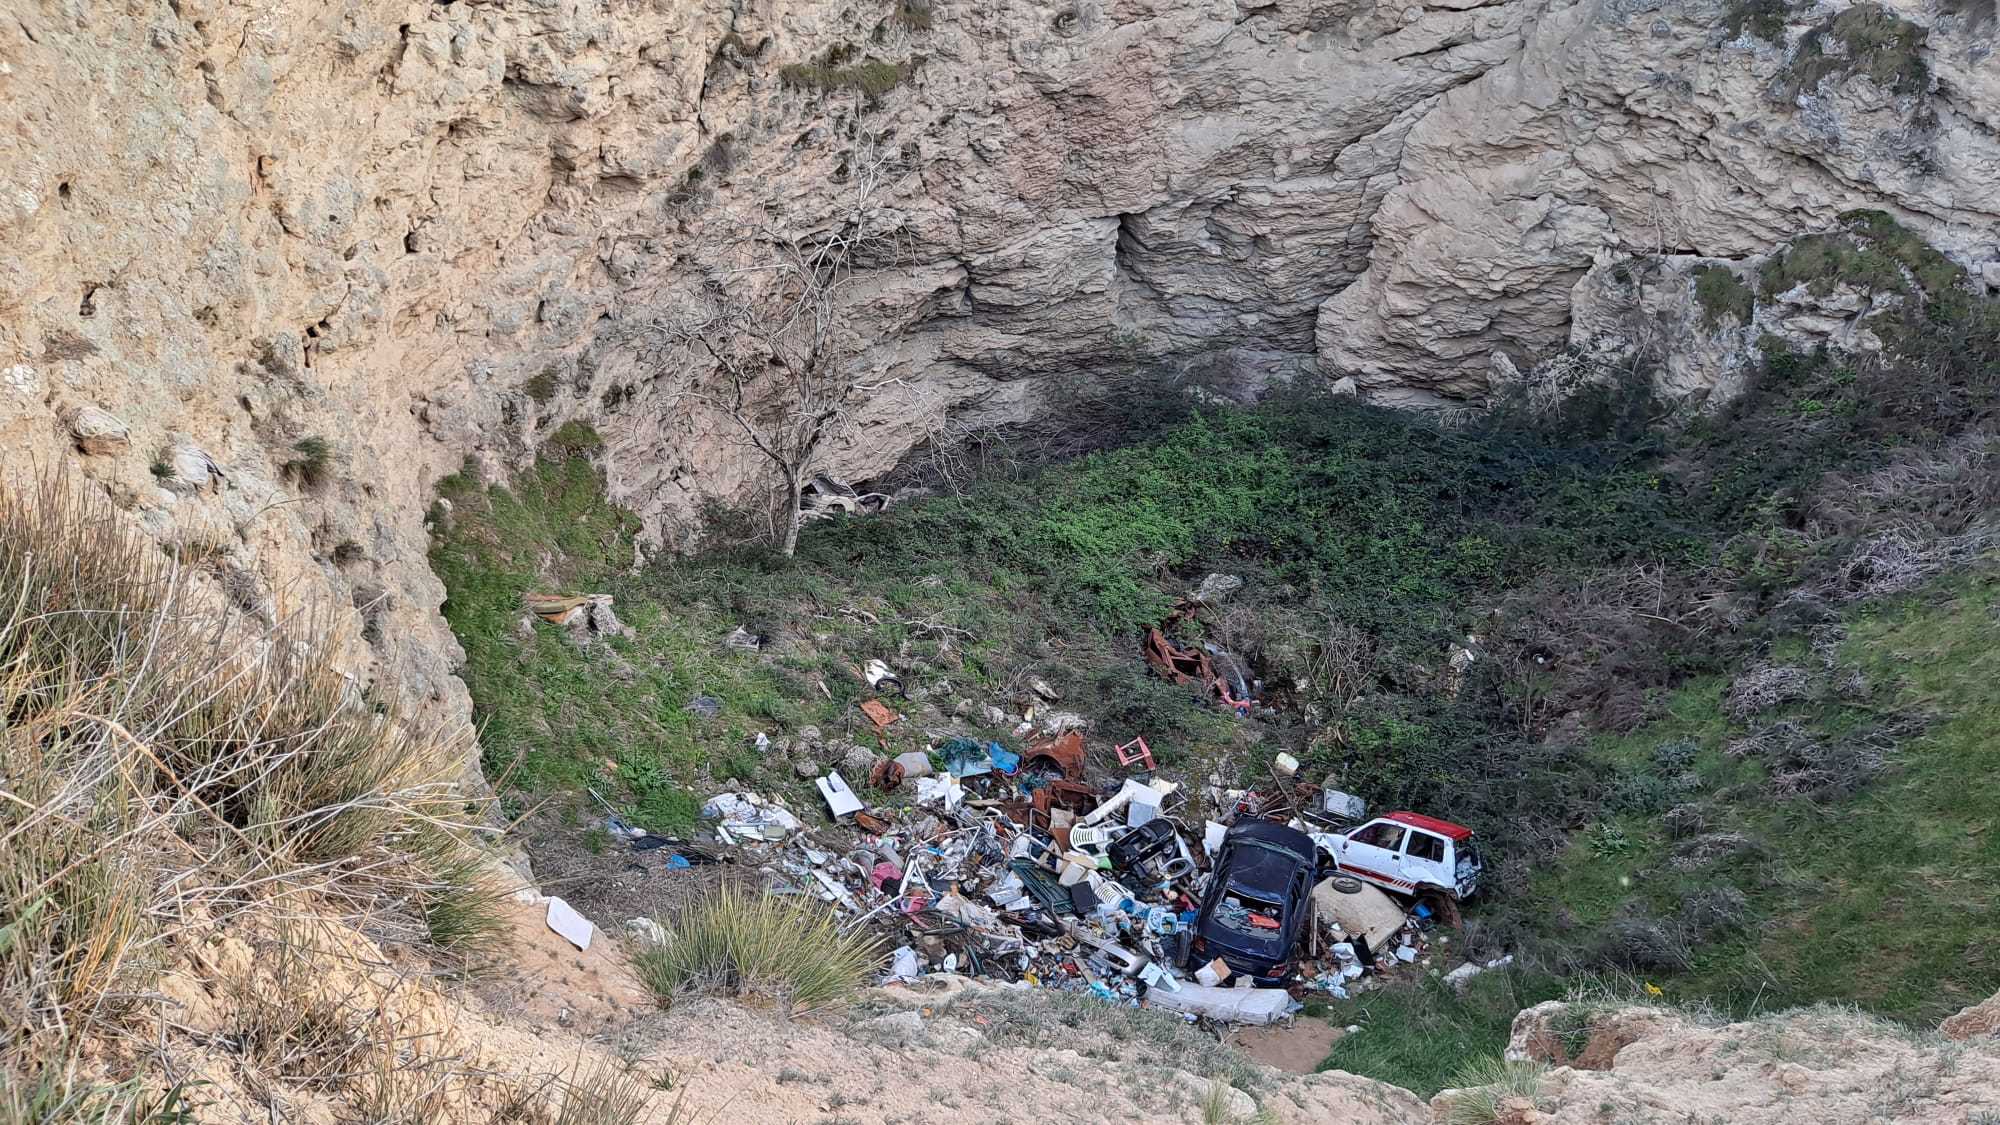 Cientos de residuos, entre los que se encuentran electrodomésticos, sillas e incluso automóviles, tirados en una sima cercana a la laguna de San Juan.